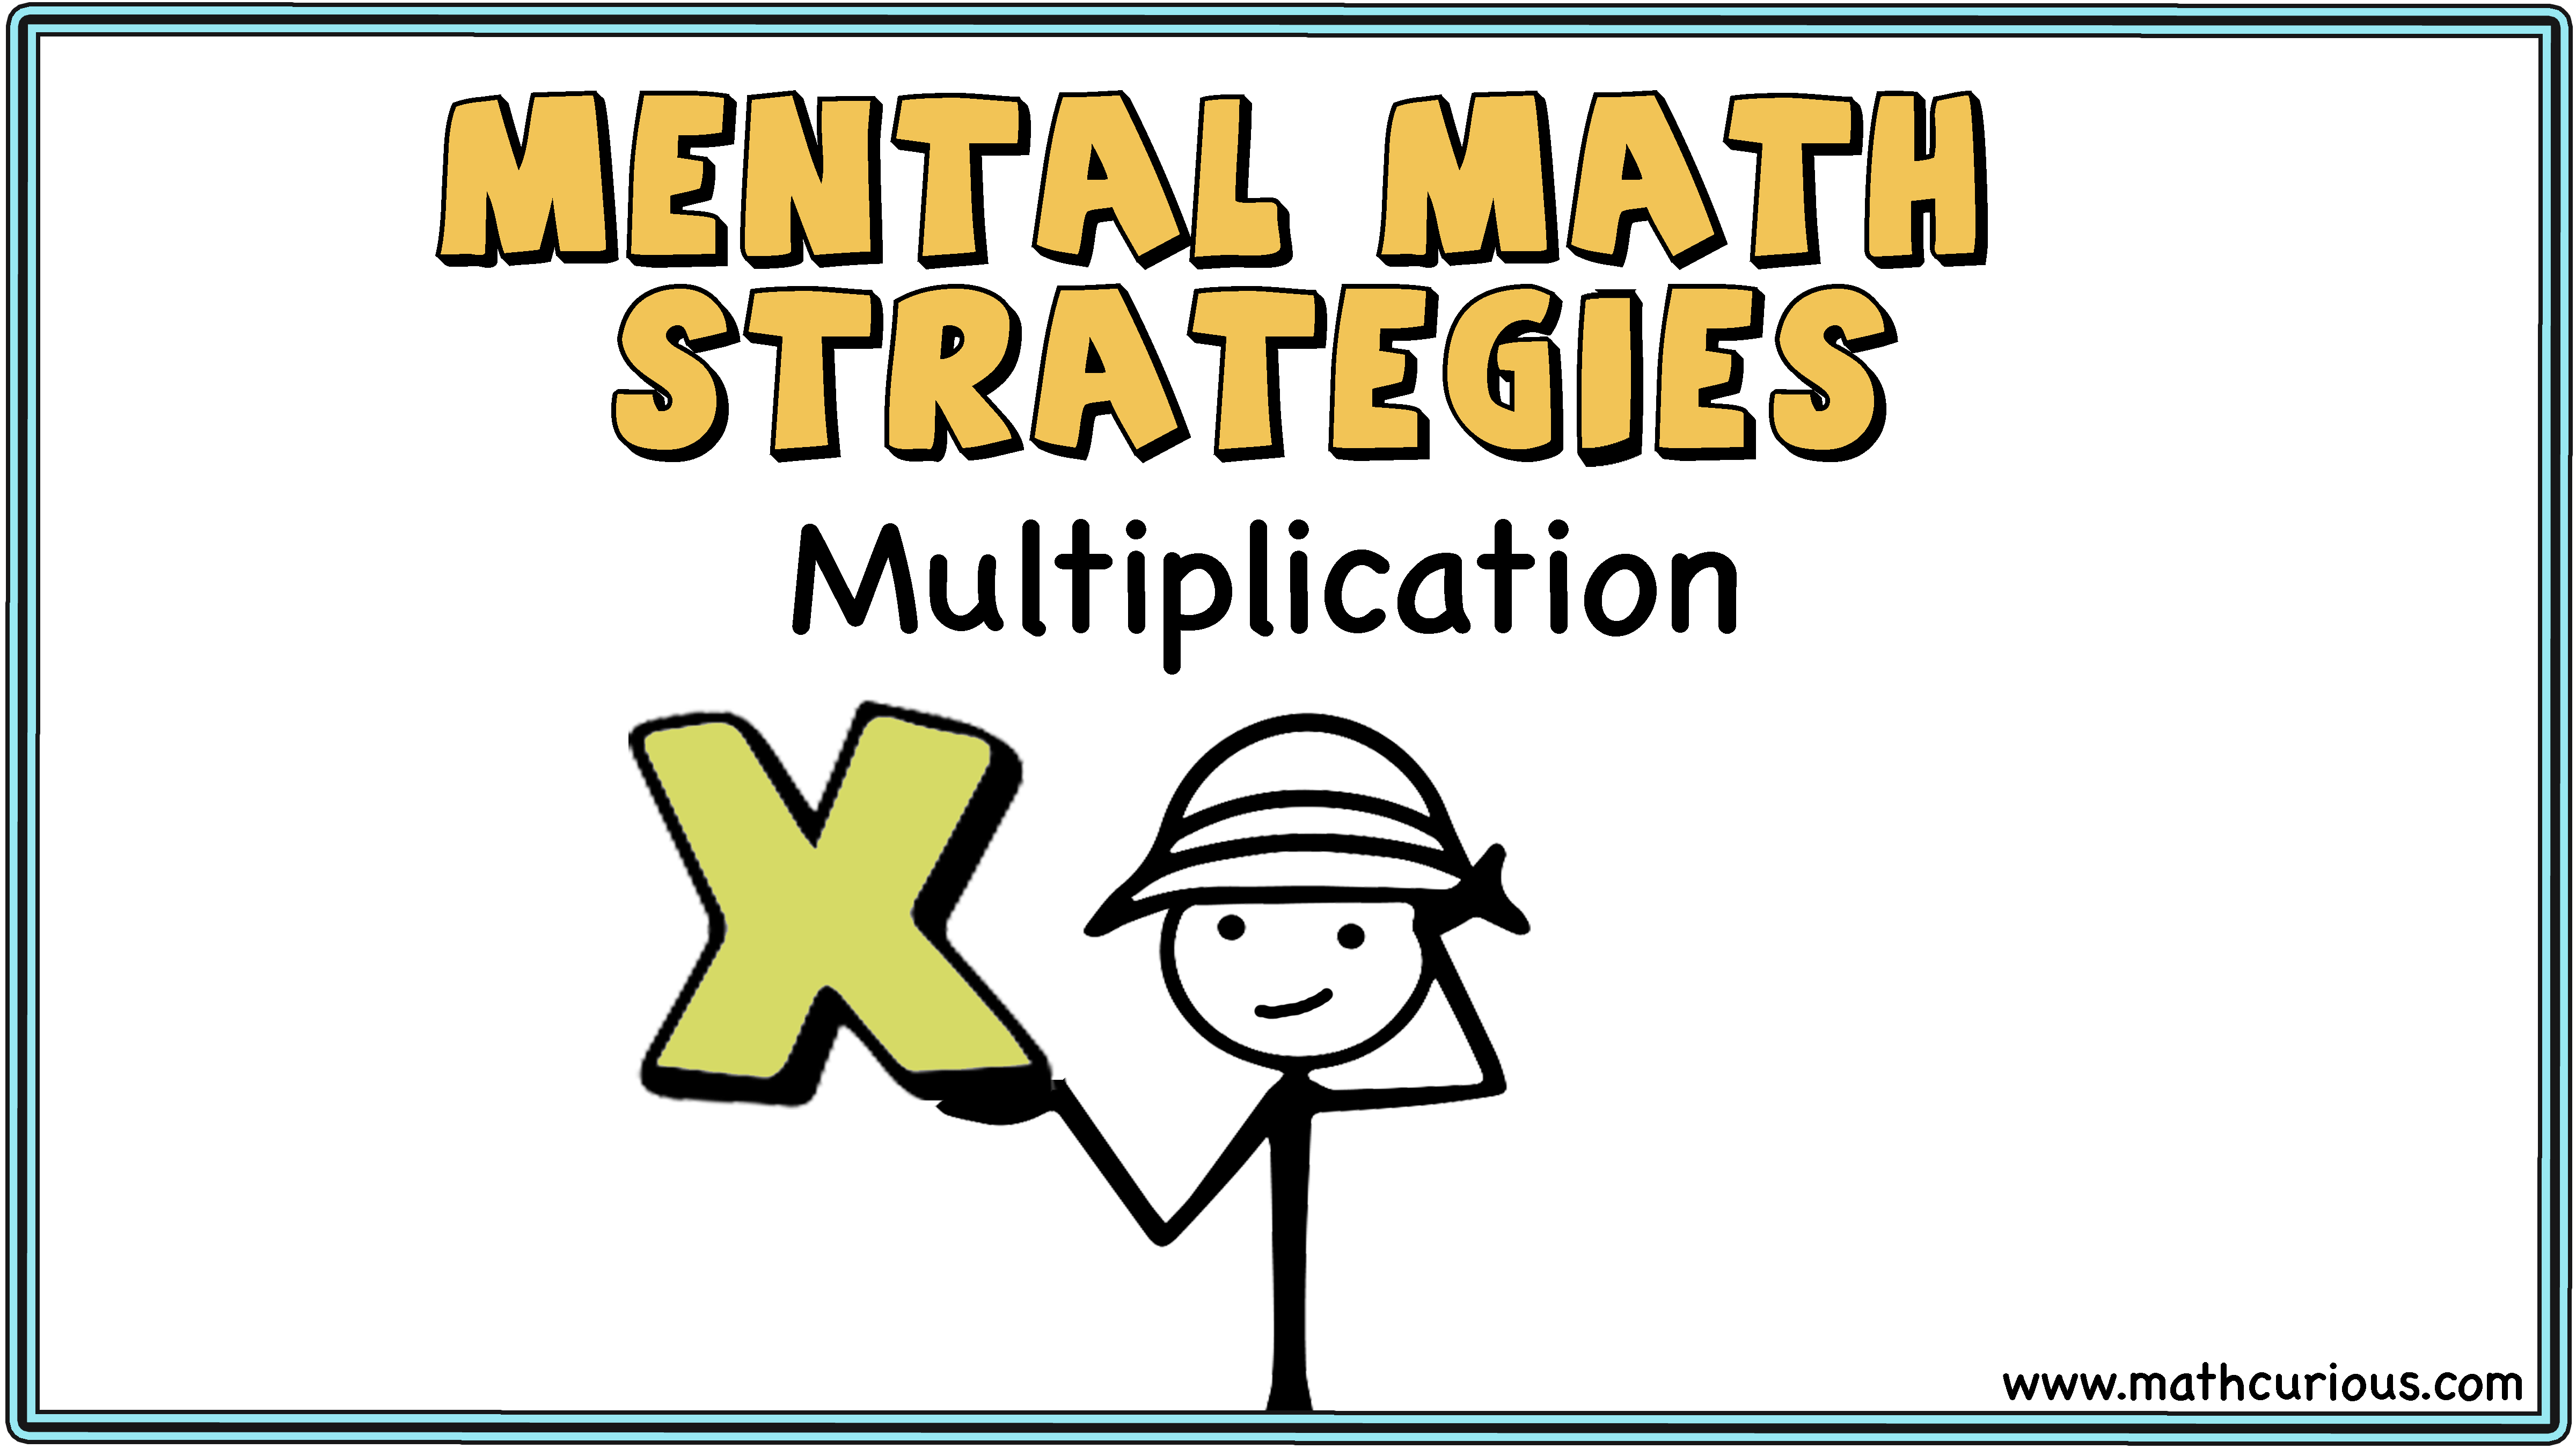 mental-math-strategies-multiplication-mathcurious